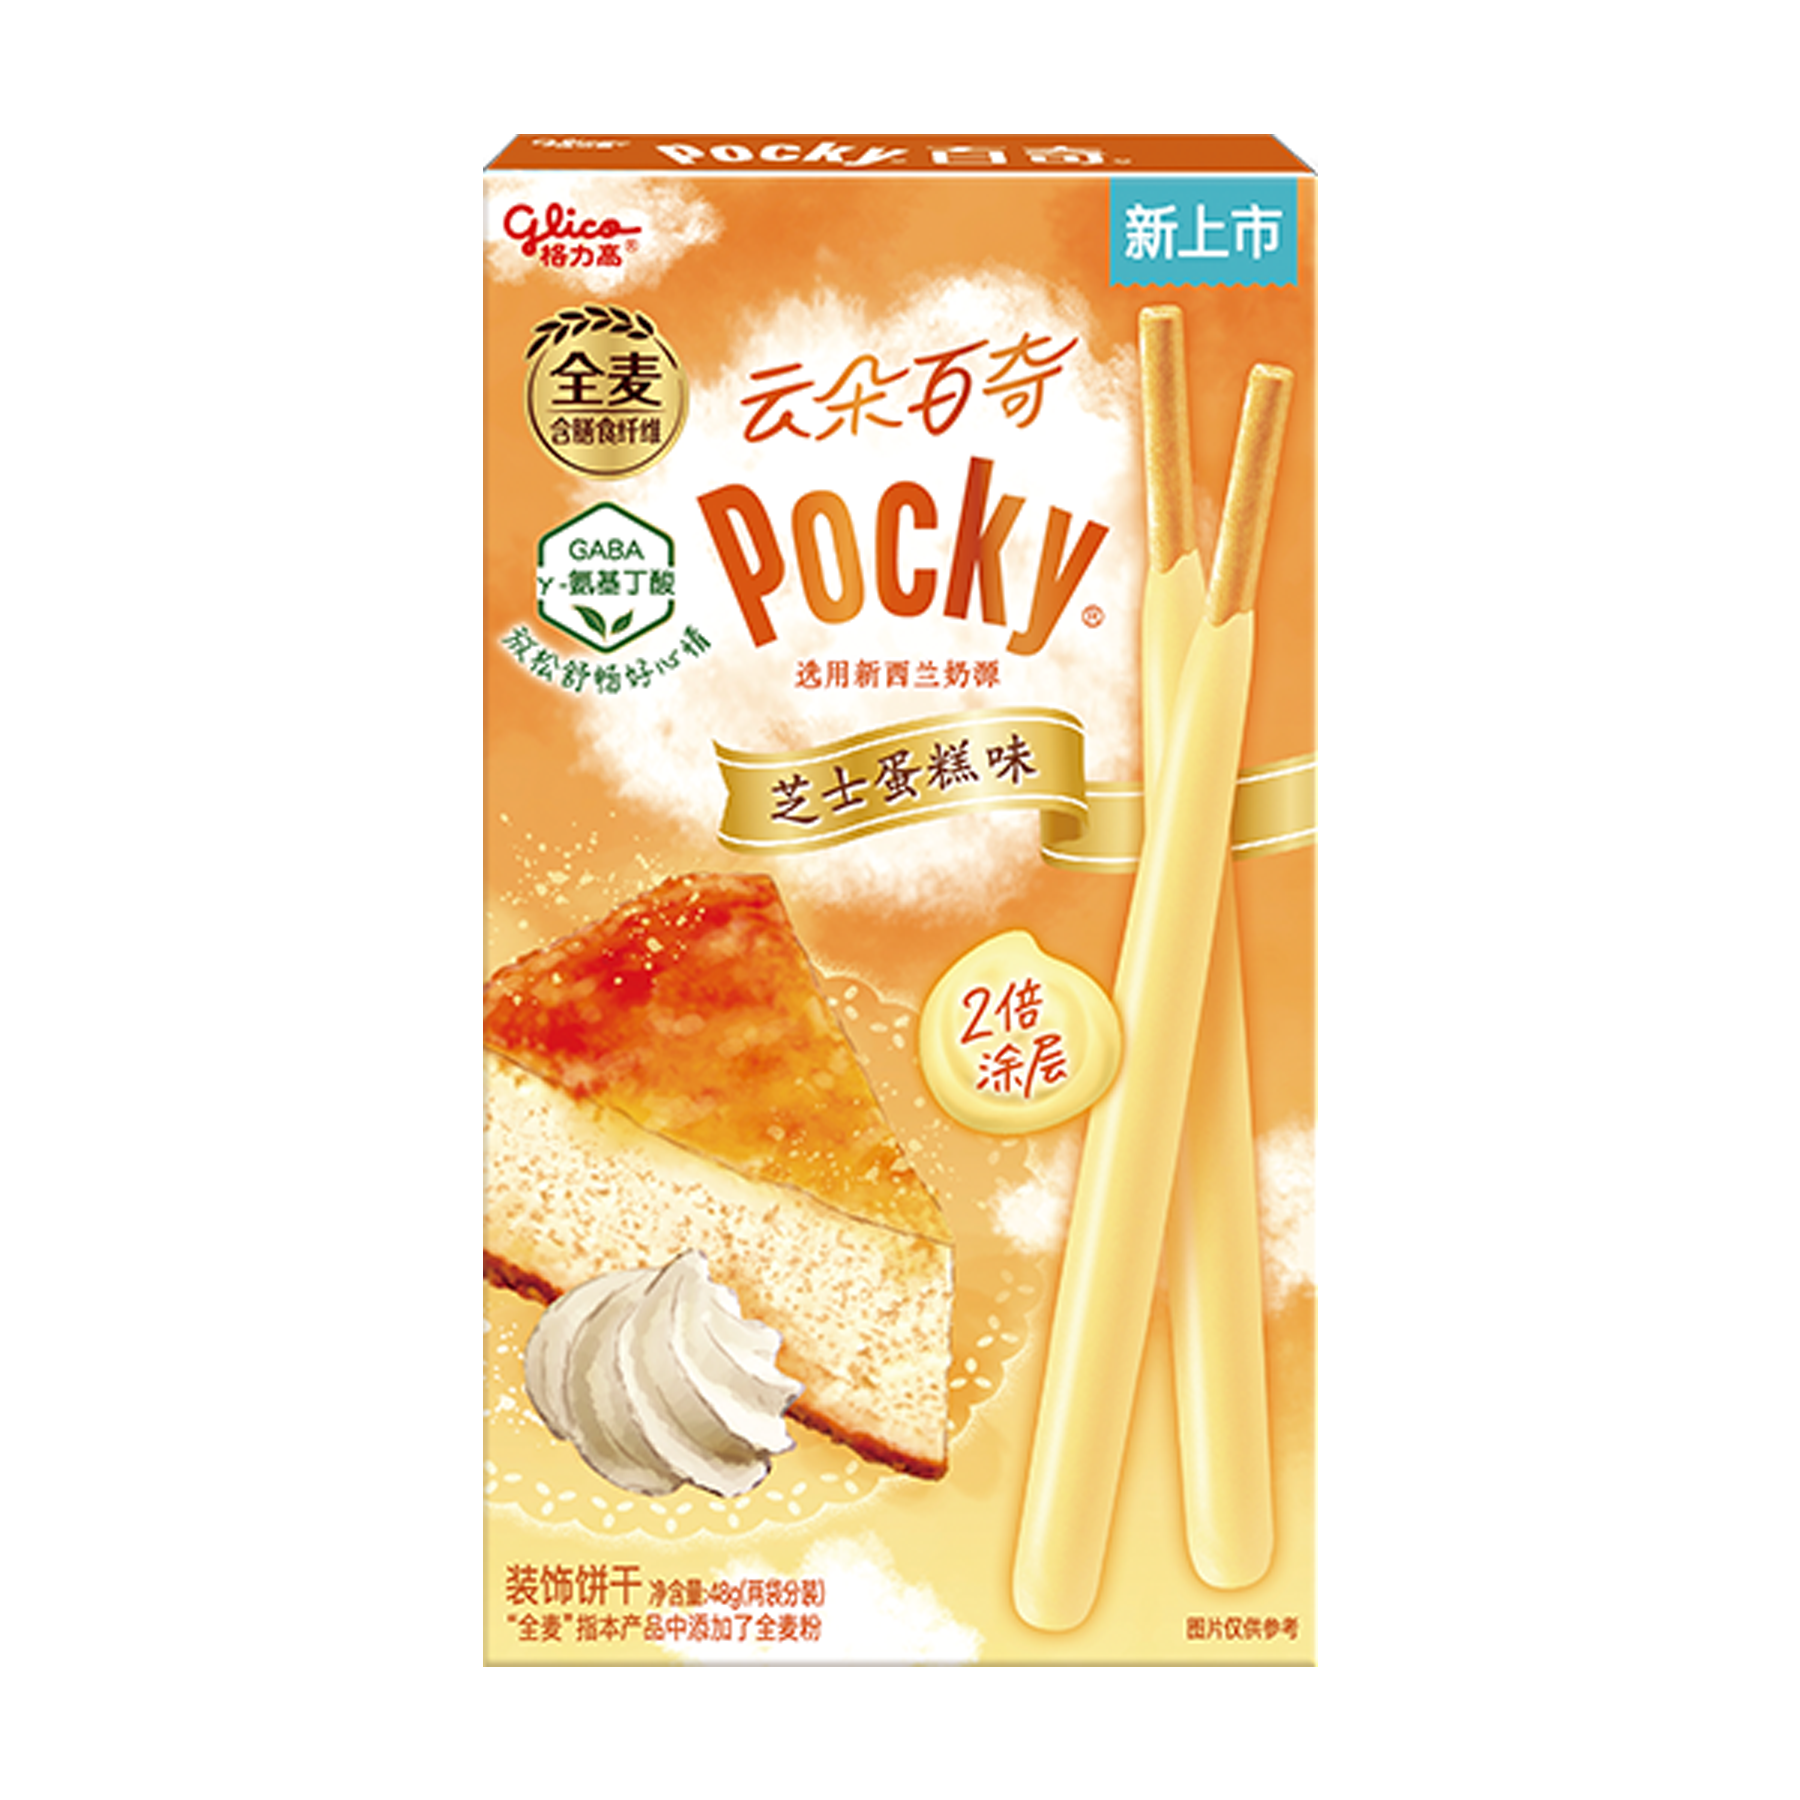 Glico Pocky Relax Cheesecake (48gg)